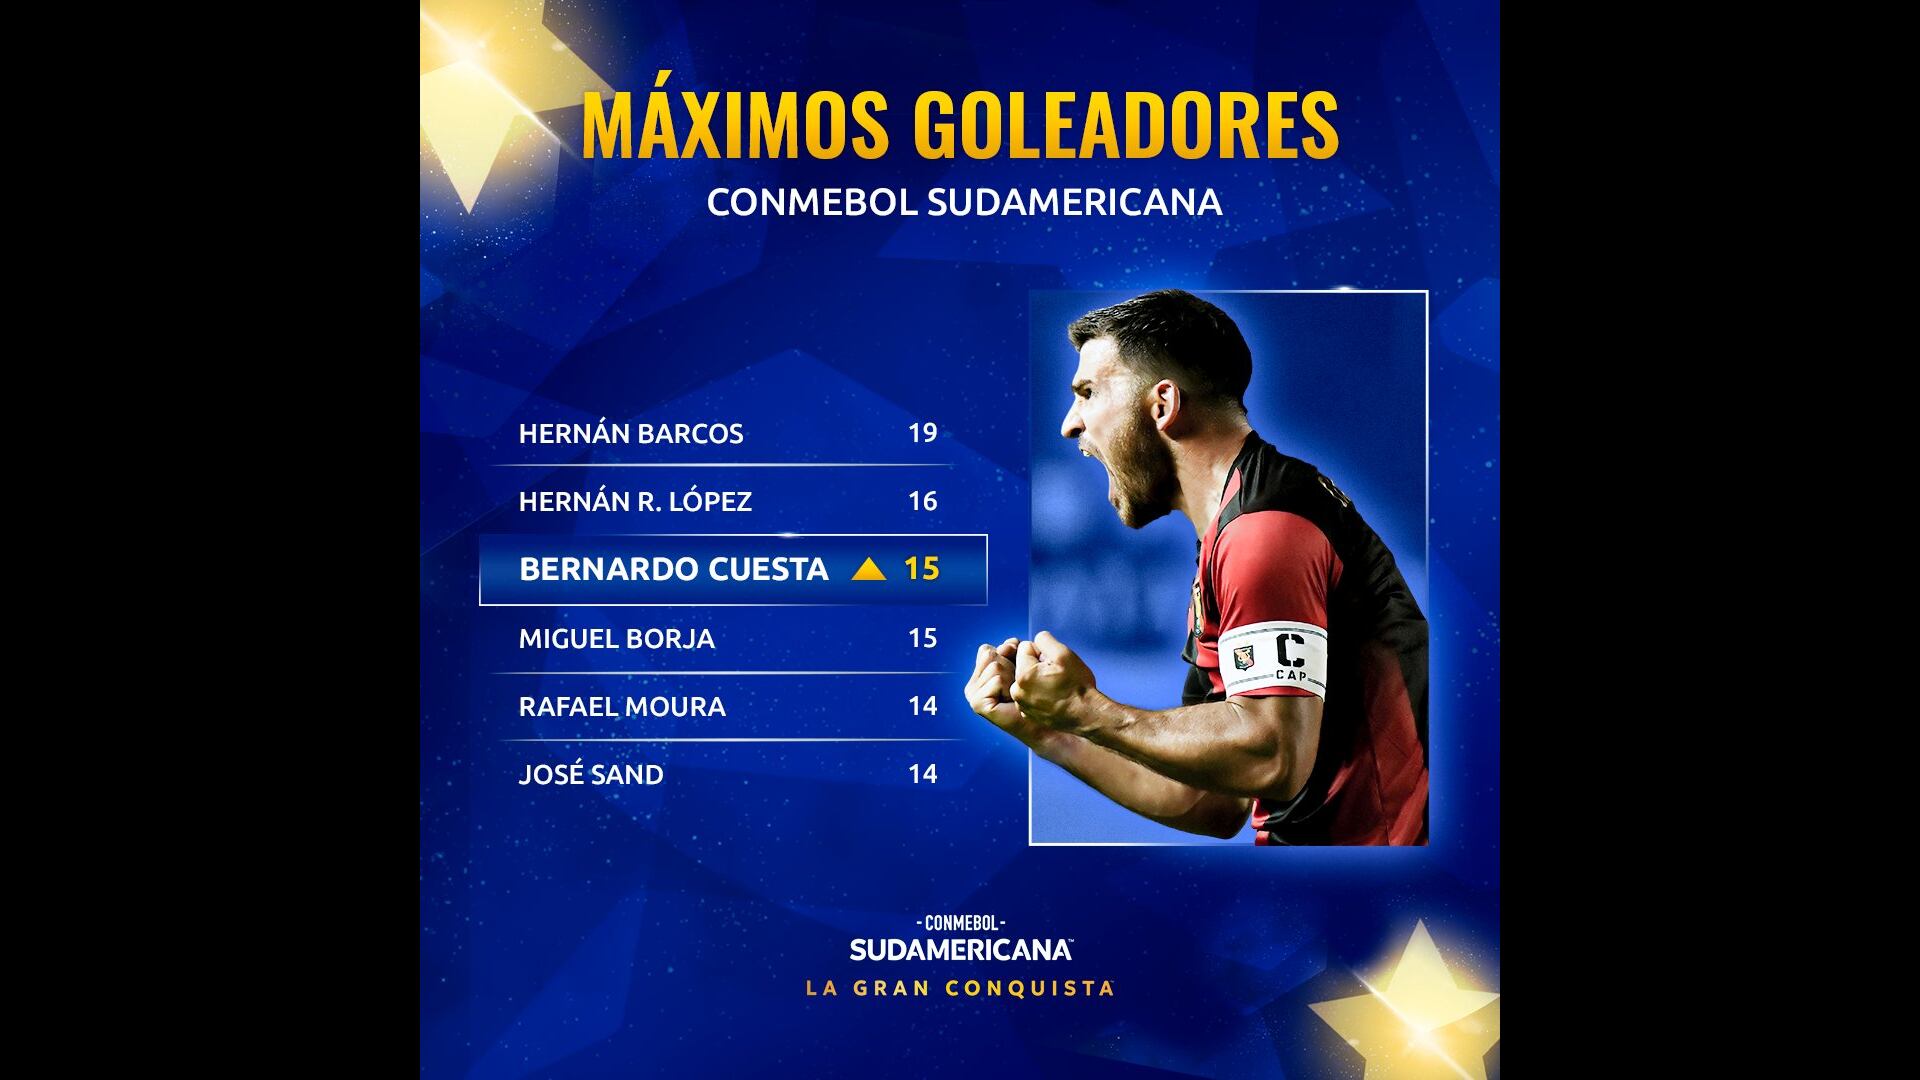 Bernardo Cuesta es el tercer goleador en la tabla histórica de la Copa Sudamericana. (Foto: Conmebol Sudamericana)